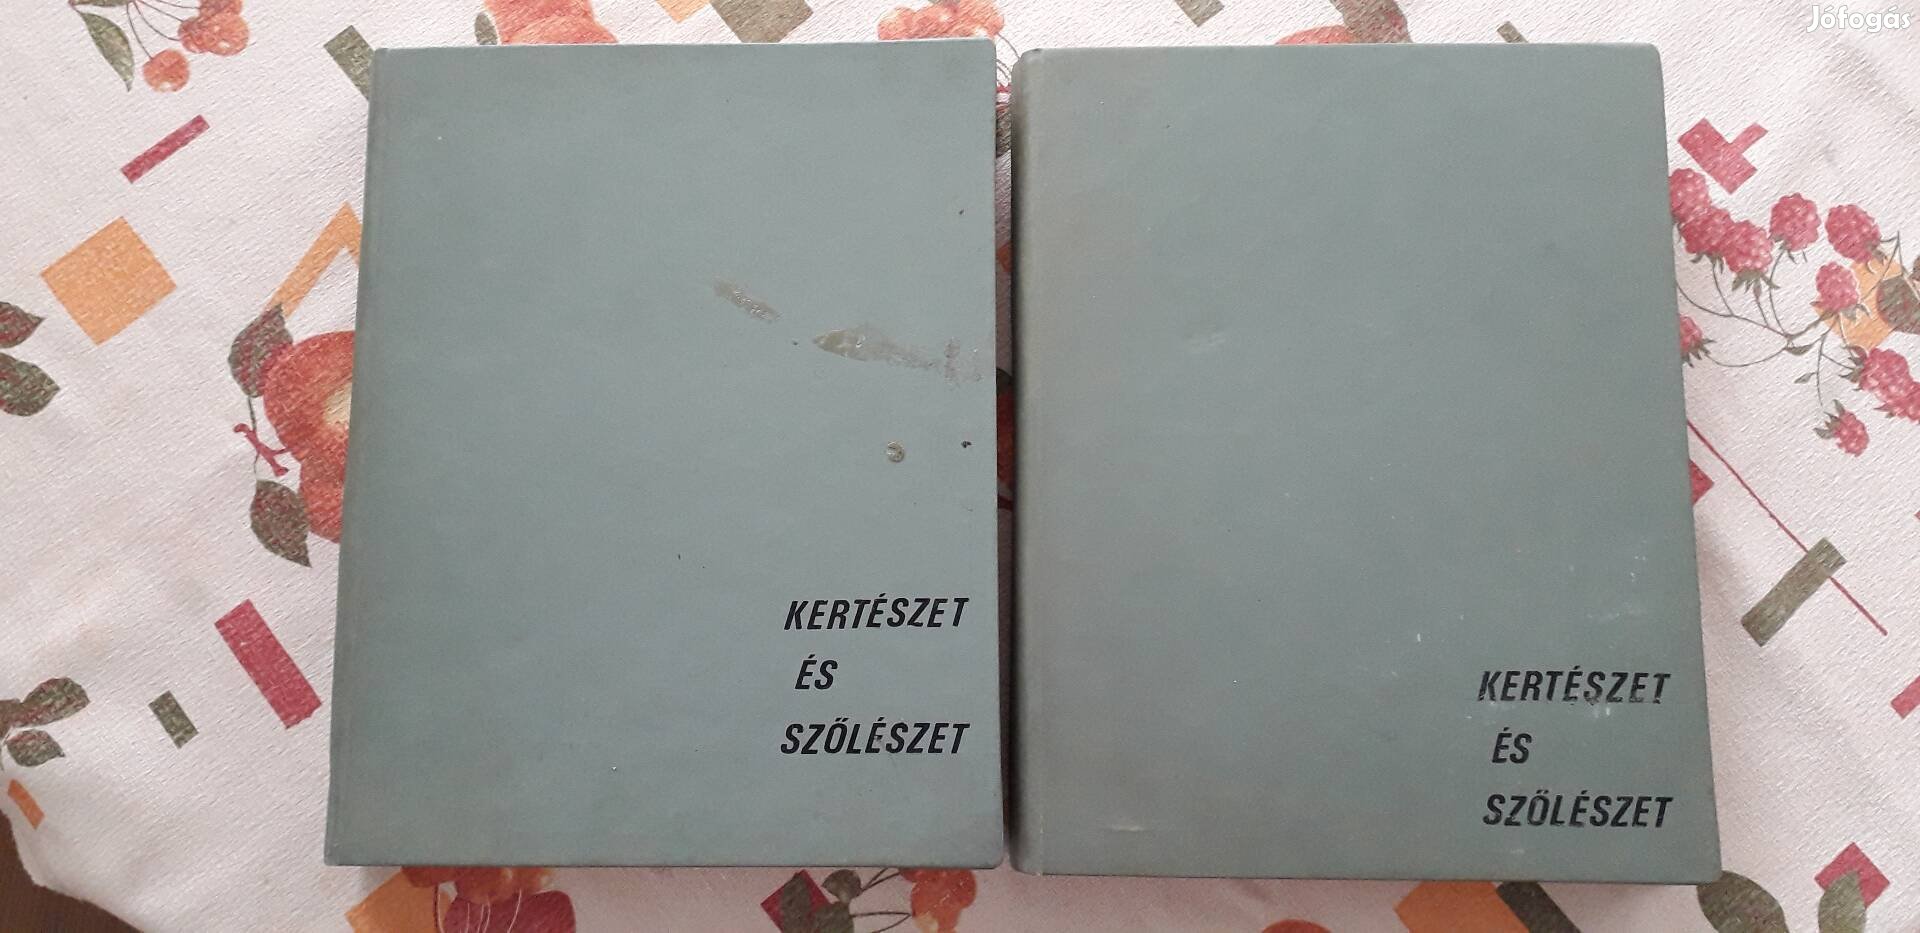 Kertészet és szőlészet 2 kötet könyv. Mérete: 29x23x3,5 cm.